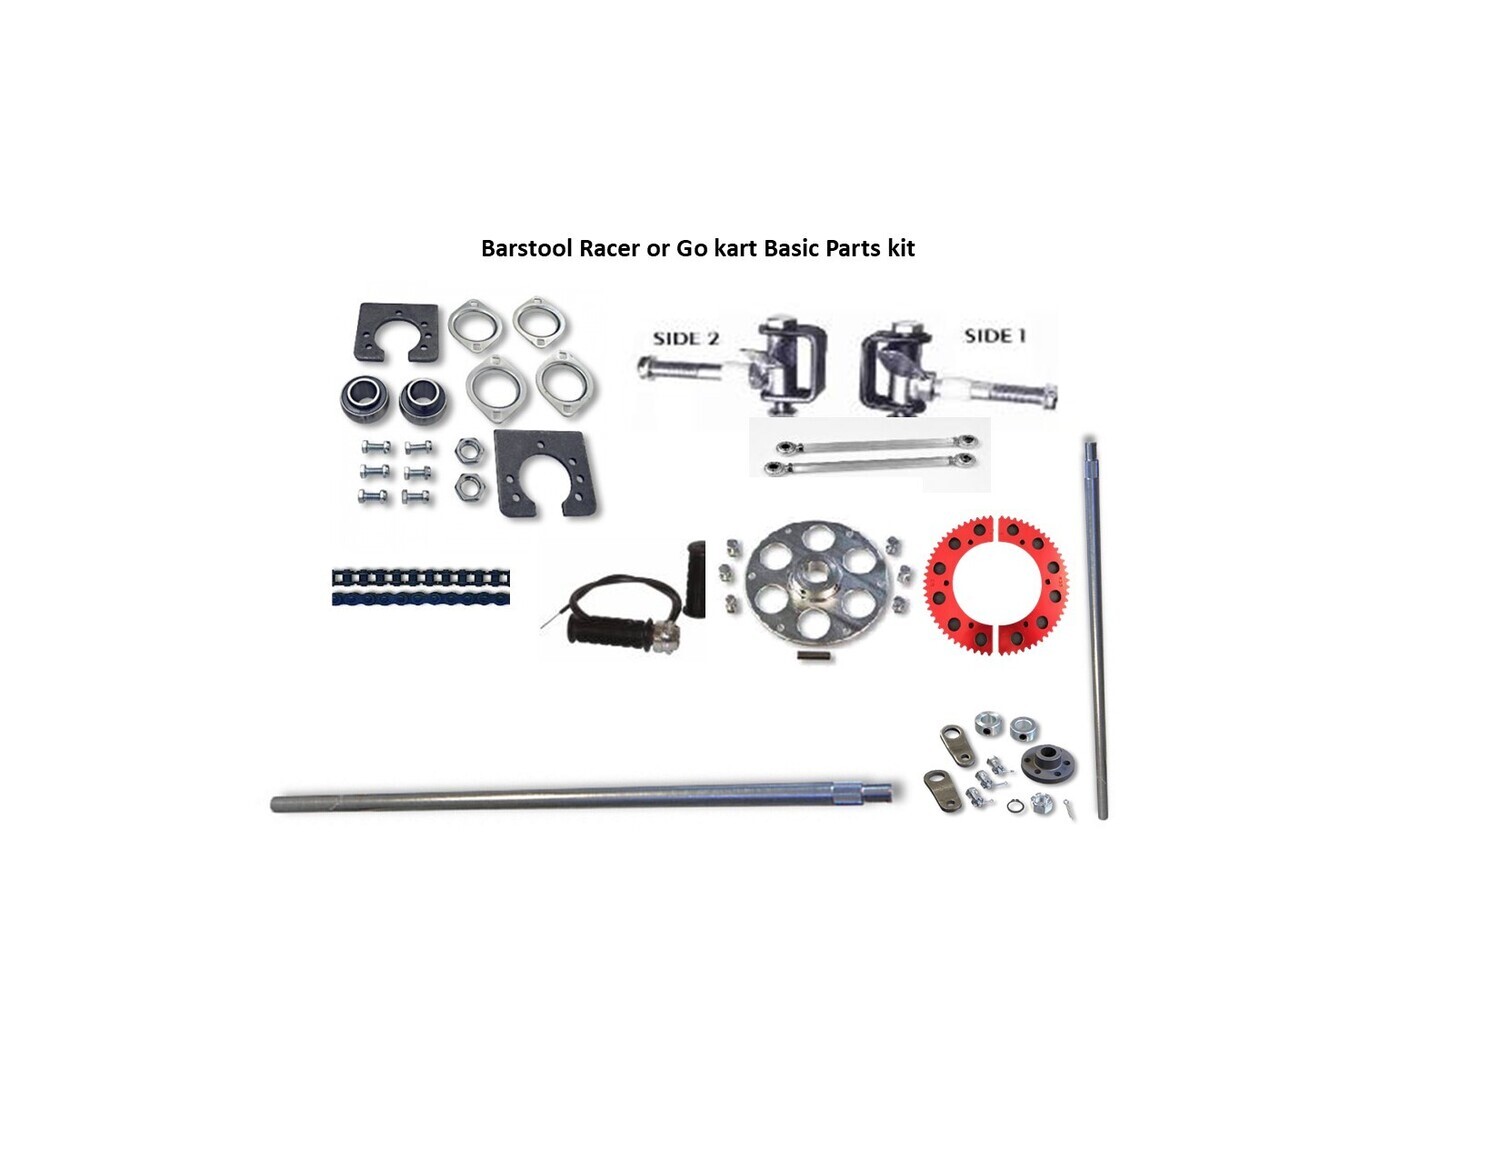 Barstool Racer-Go Kart Basic Parts Kit 1" axle